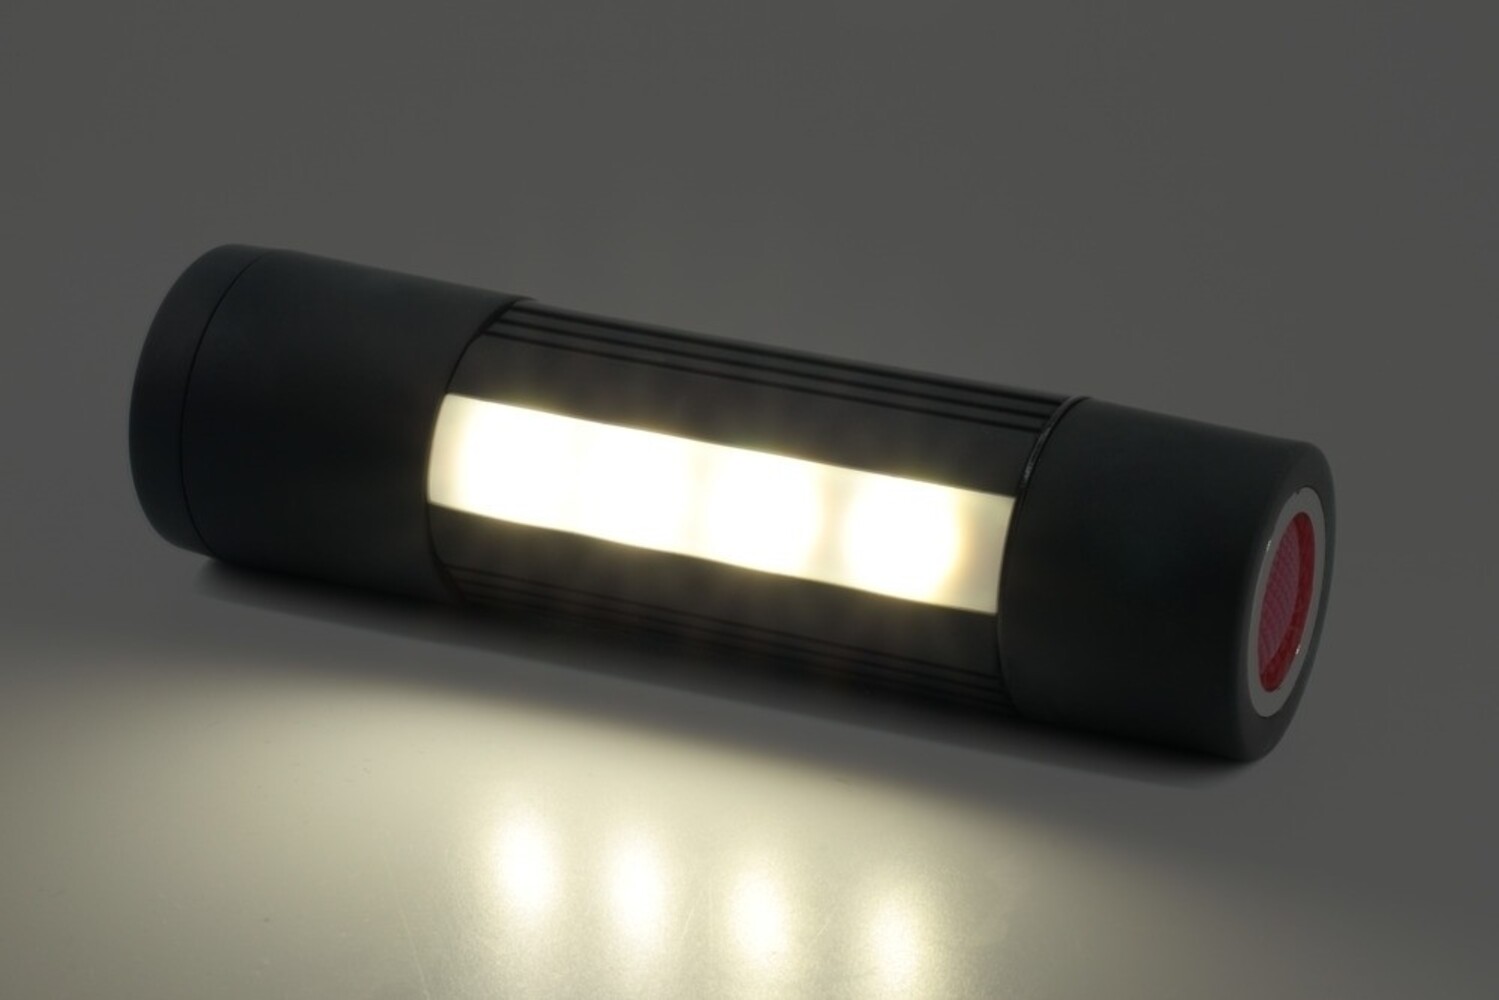 LED Taschenlampe von HyCell, leistungsstark mit Magneten und Gürtelclip - ideale Arbeitslampe für Auto und Werkstatt